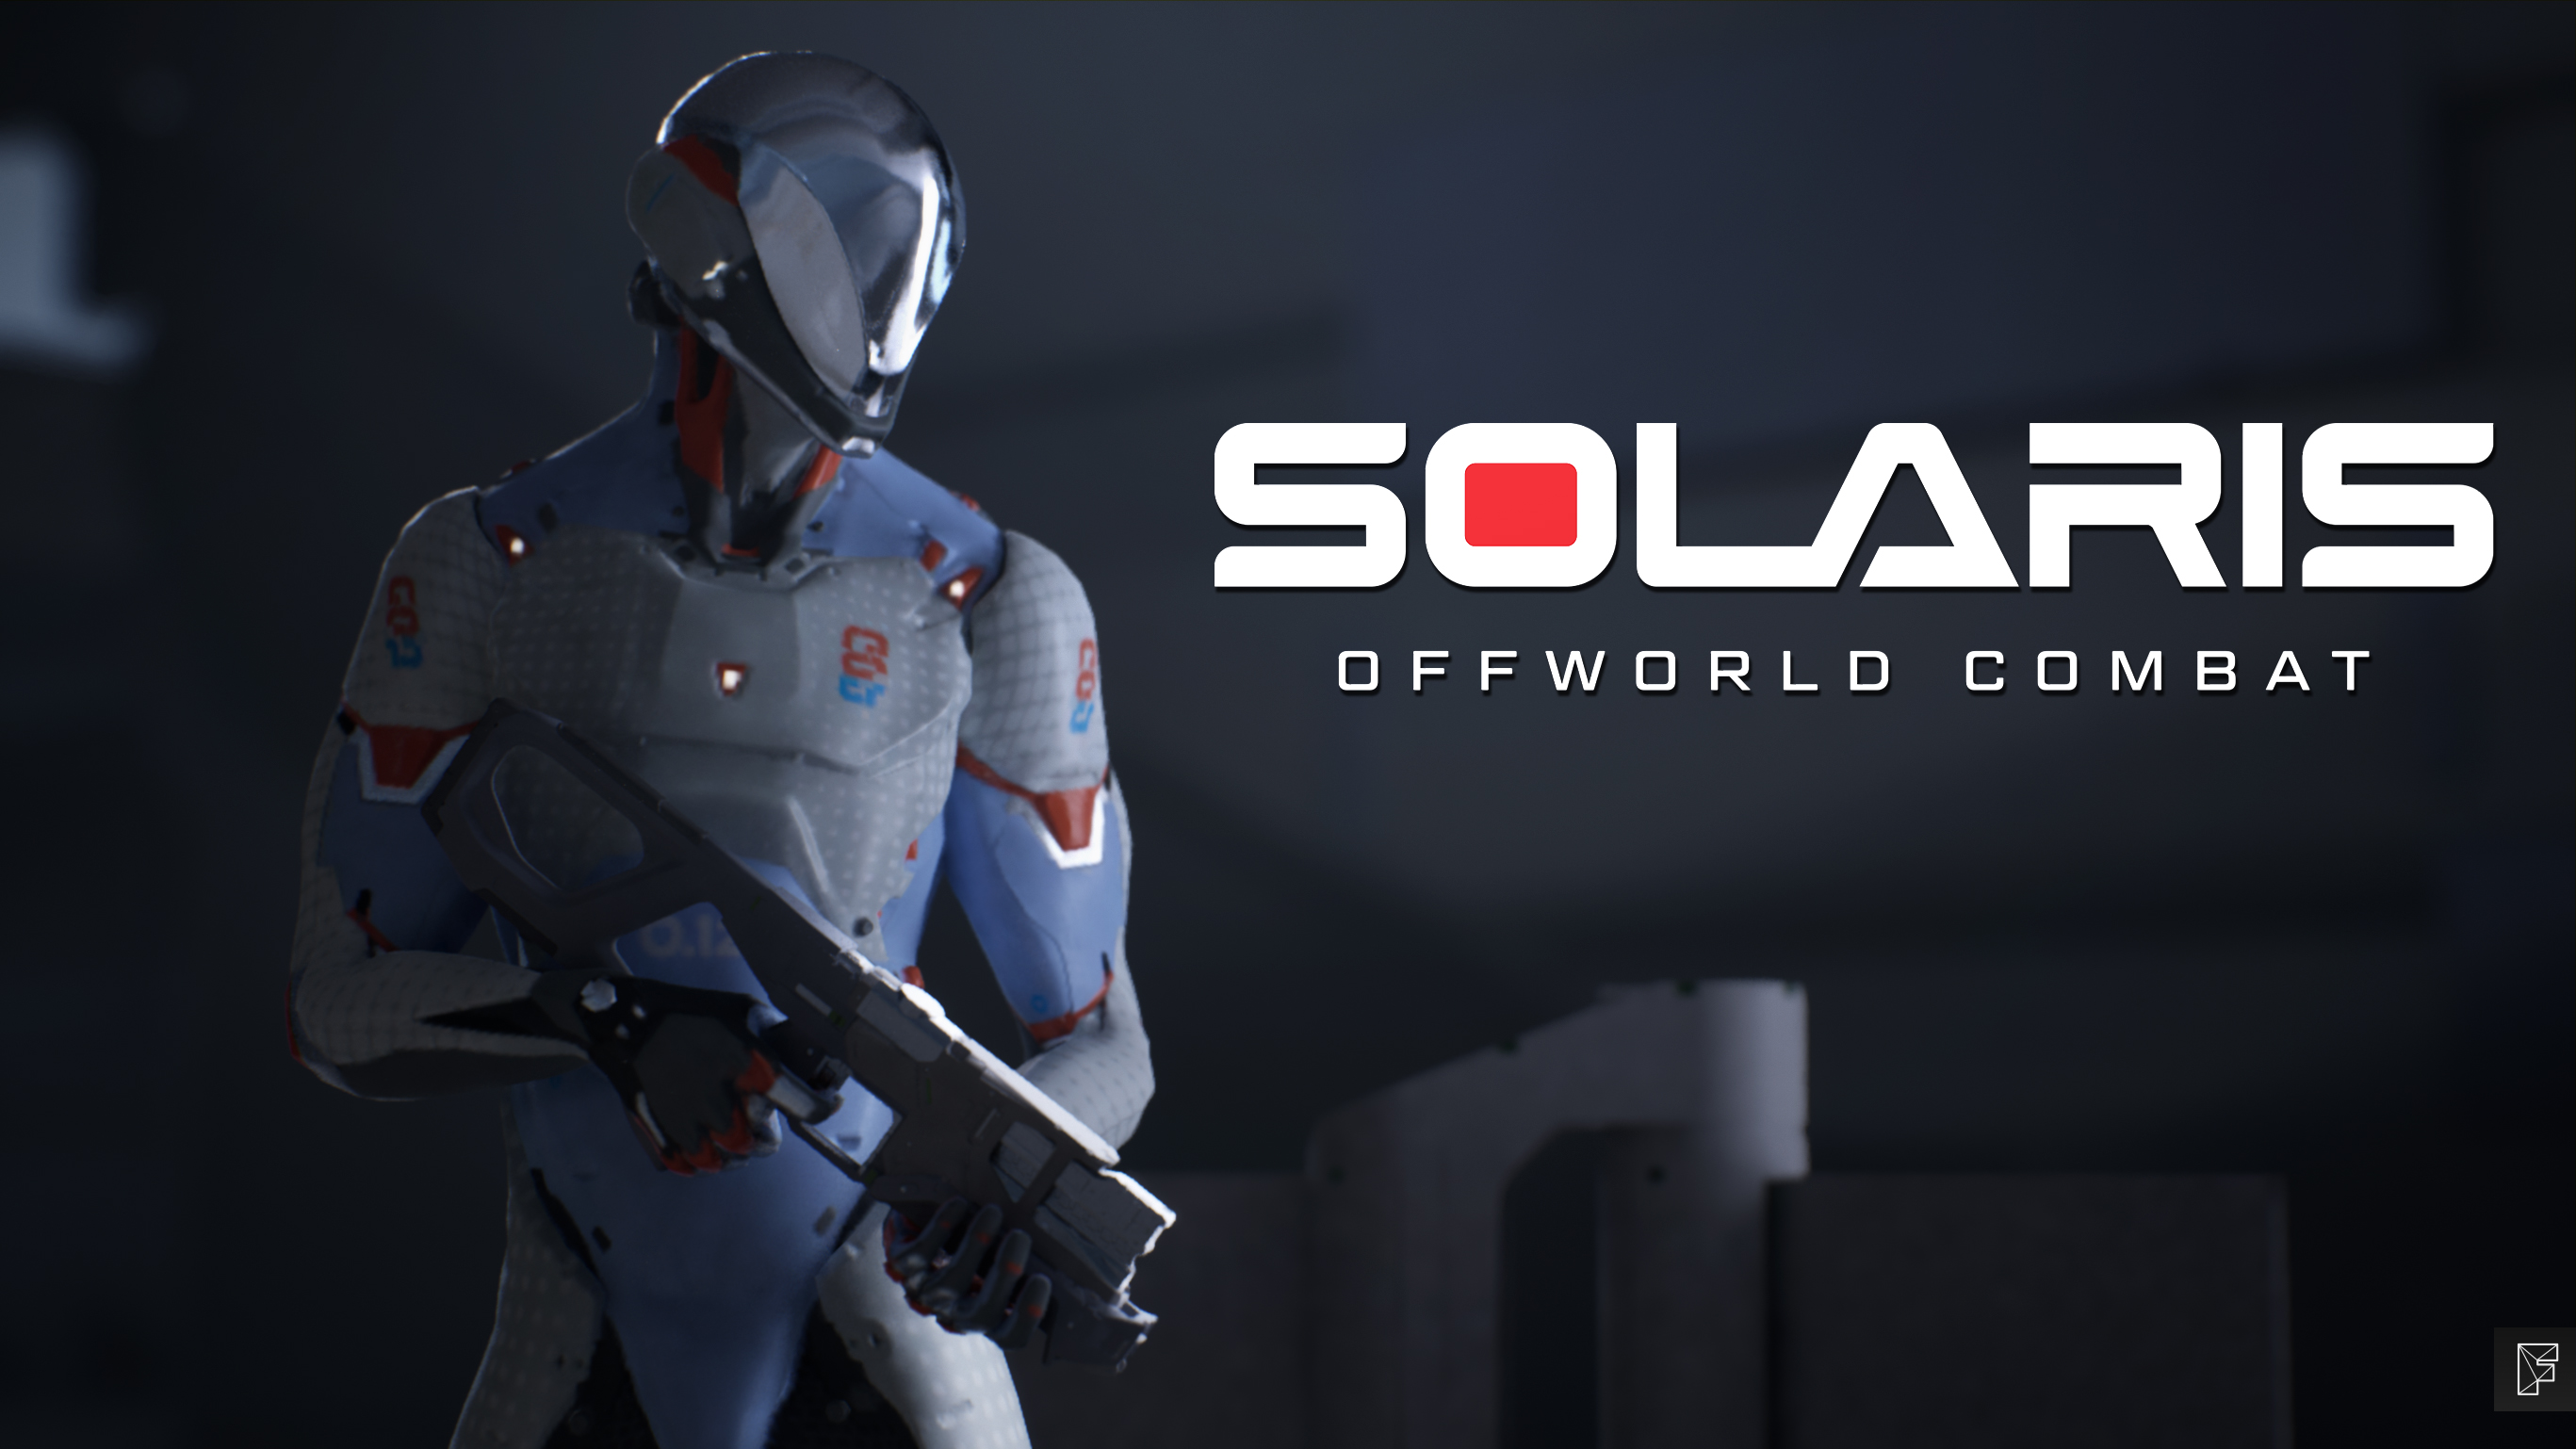 solaris offworld combat featured image hero art